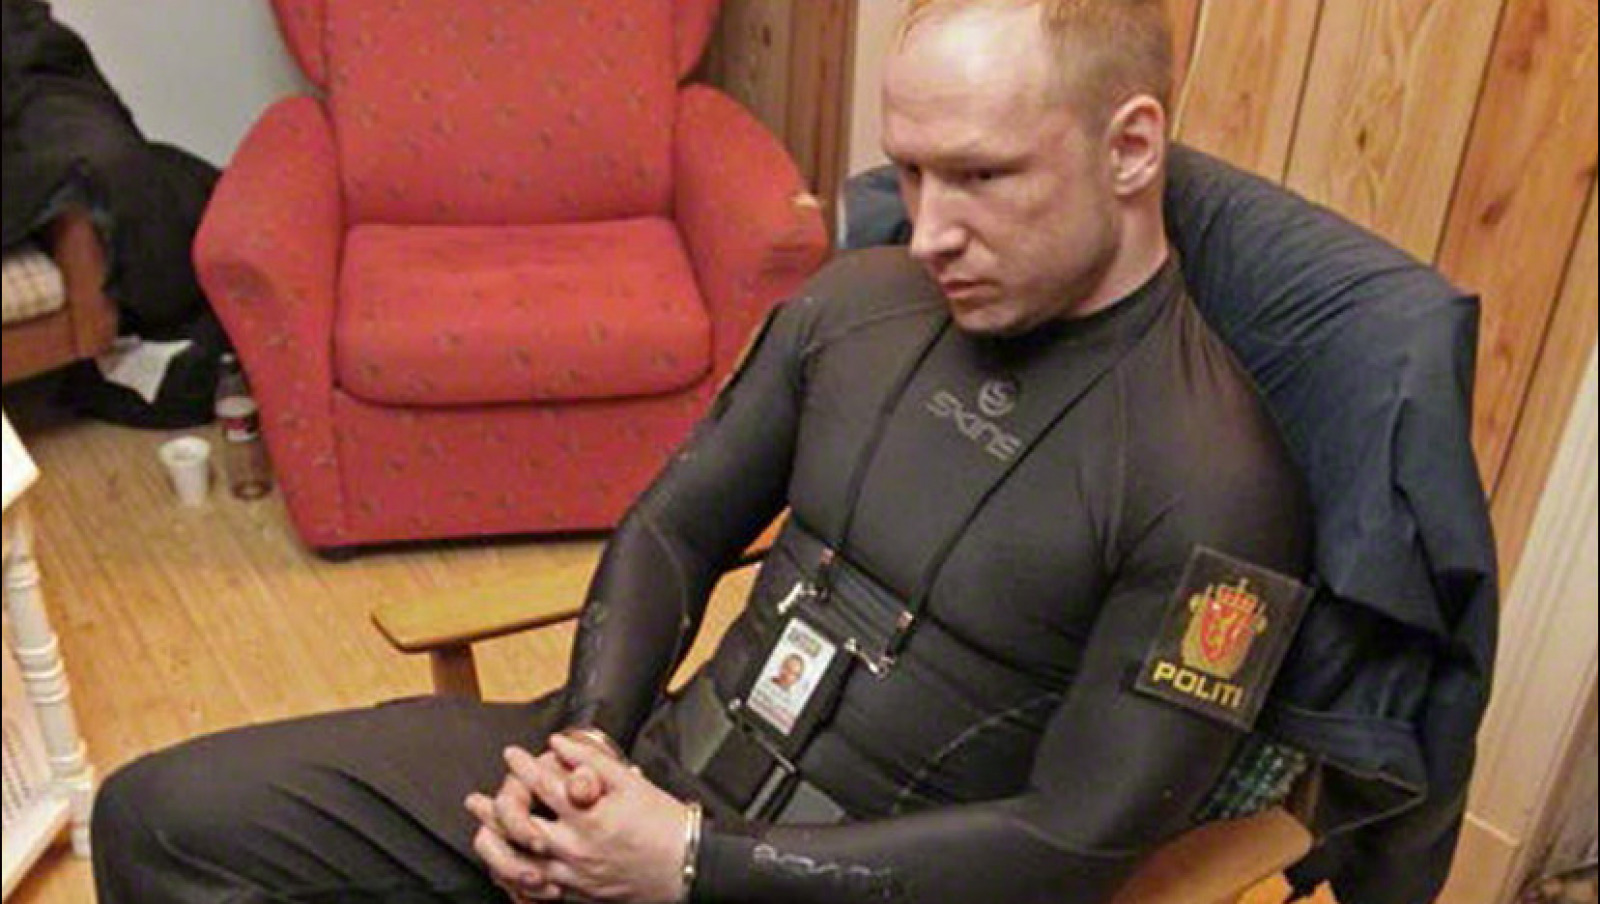 Anders Behring Breivik byter namn till "Fjotolf" | Fria Tider